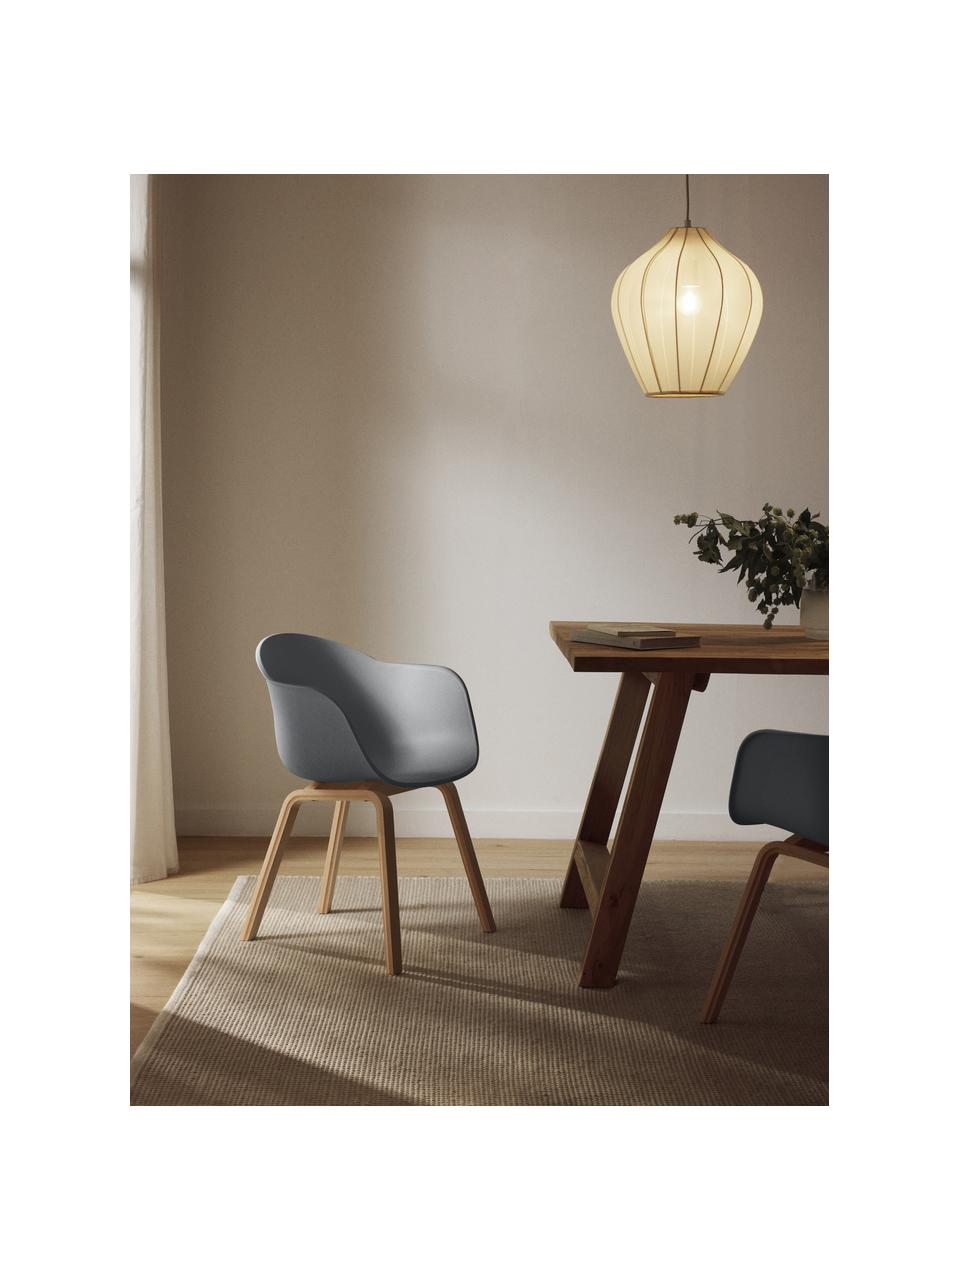 Krzesło z podłokietnikami z tworzywa sztucznego Claire, Nogi: drewno bukowe, Antracytowy, drewno bukowe, S 60 x G 54 cm